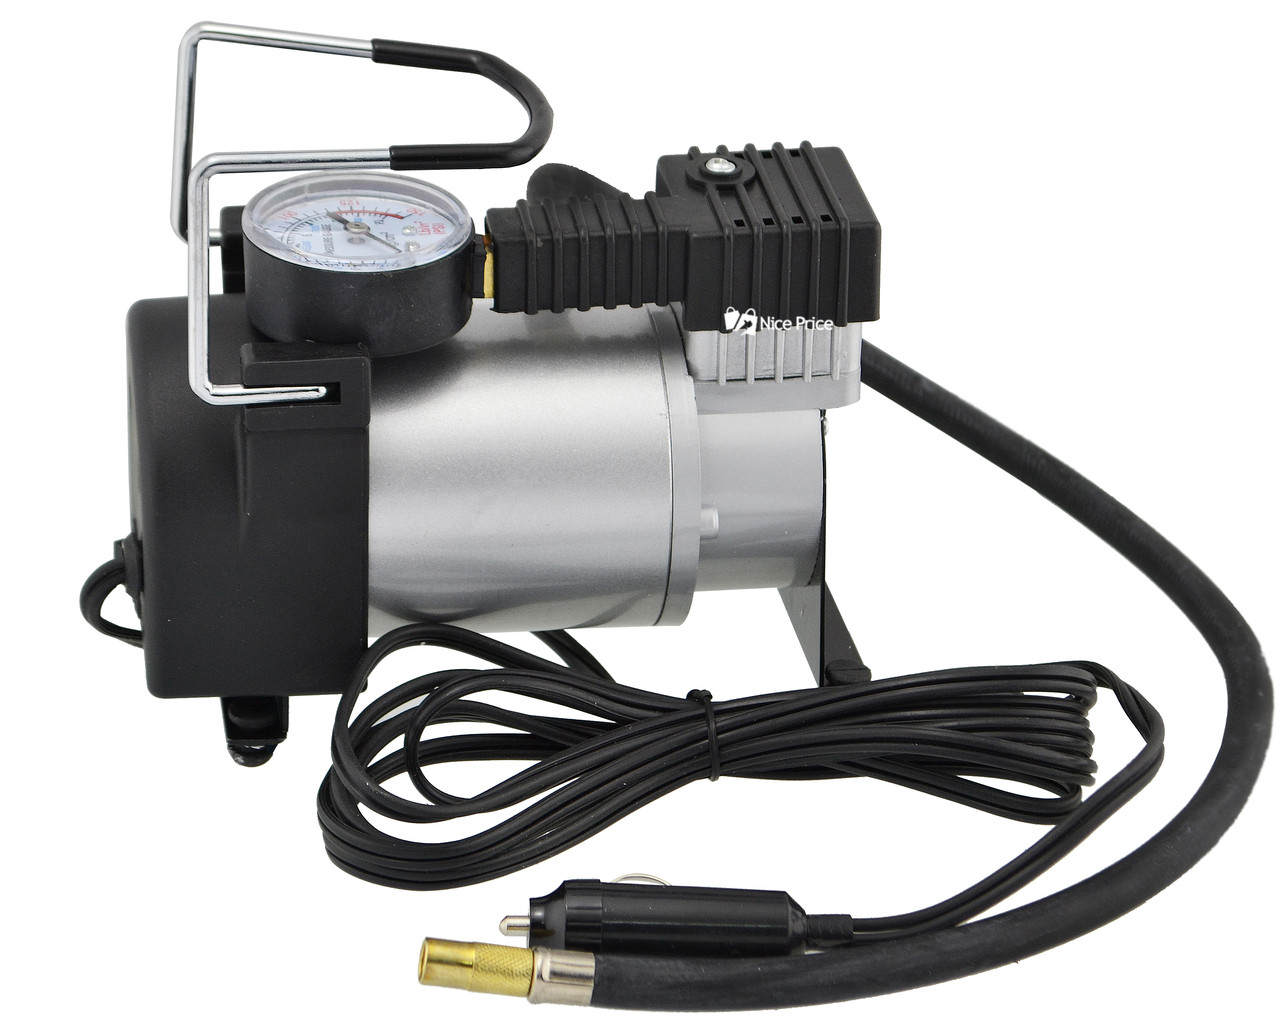 

Автомобильный компрессор Air Pump 100 PSI Silver (14075) 5B